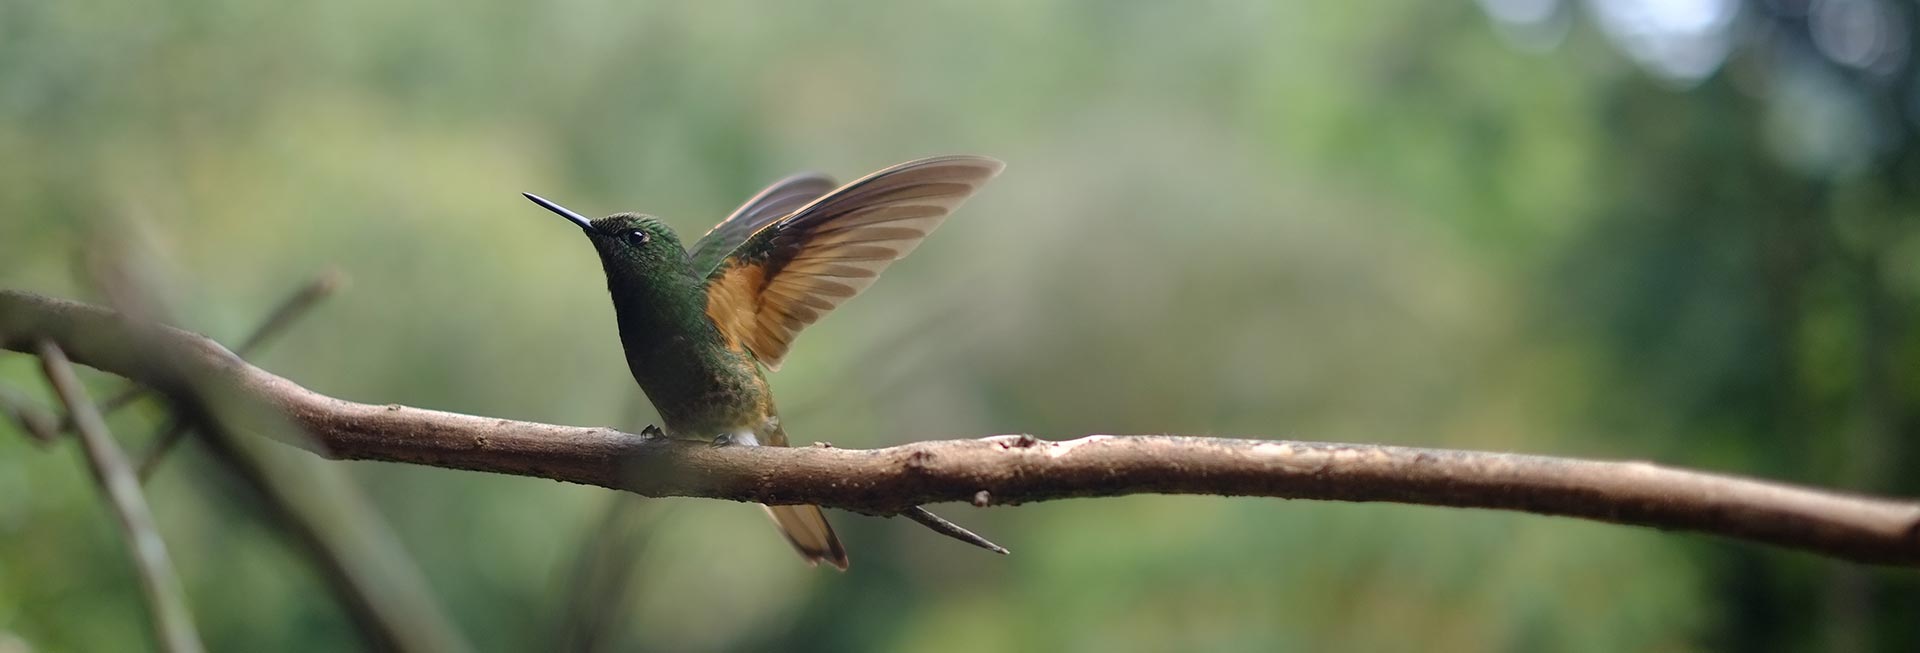 header_hummingbird